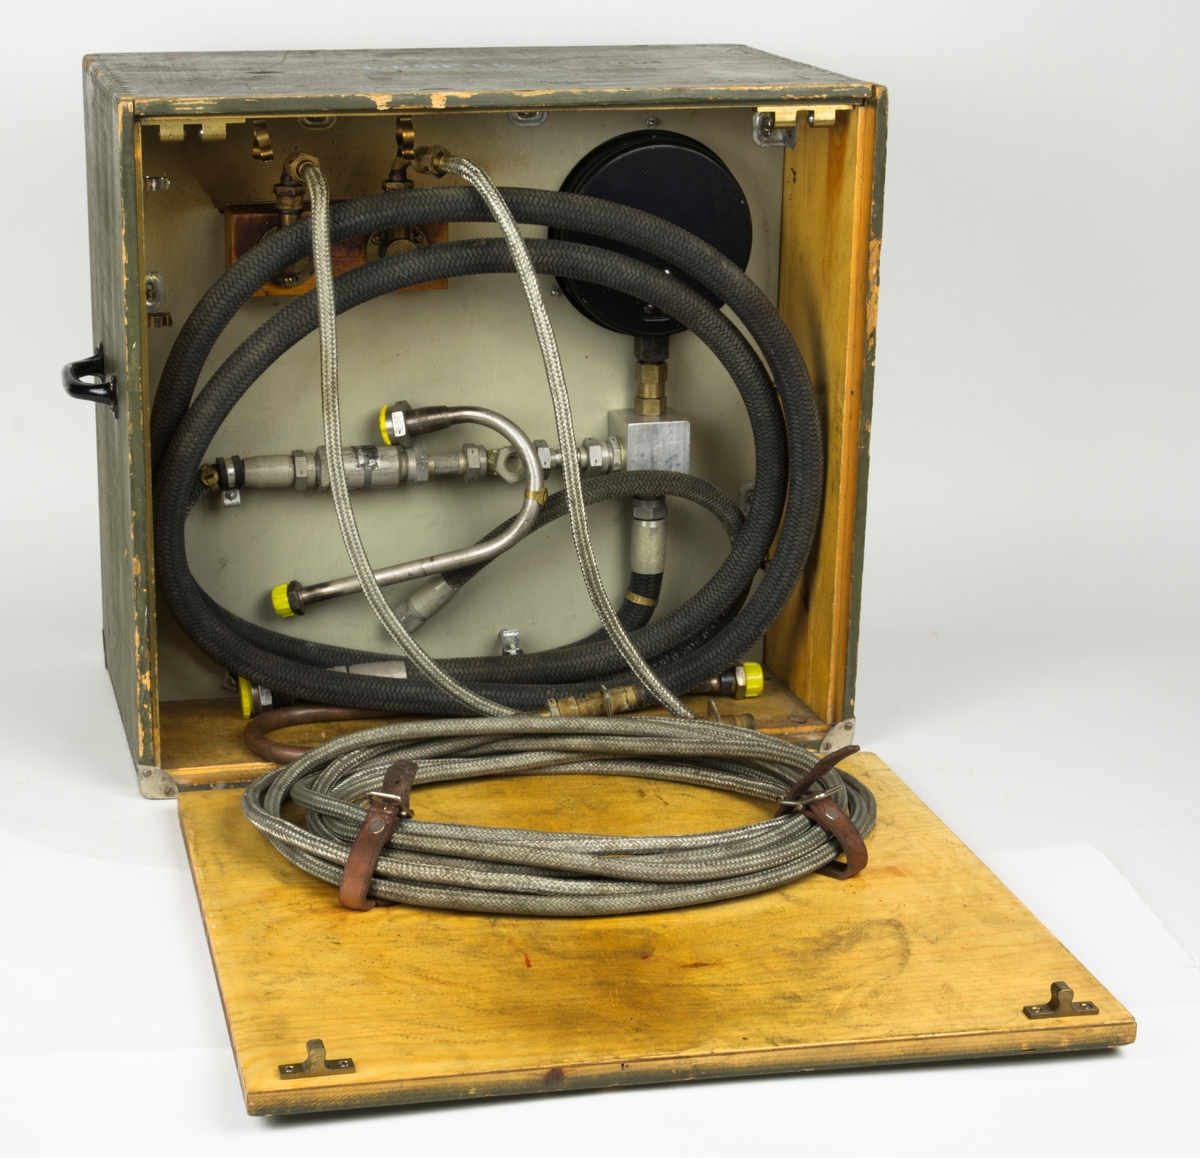 Tryckprovningsaggregat MT, förvaras i trälåda. Mätinstrumentet har mätskala från 0-100 kg/cm2. Används till startsystem fpl 35A-F.